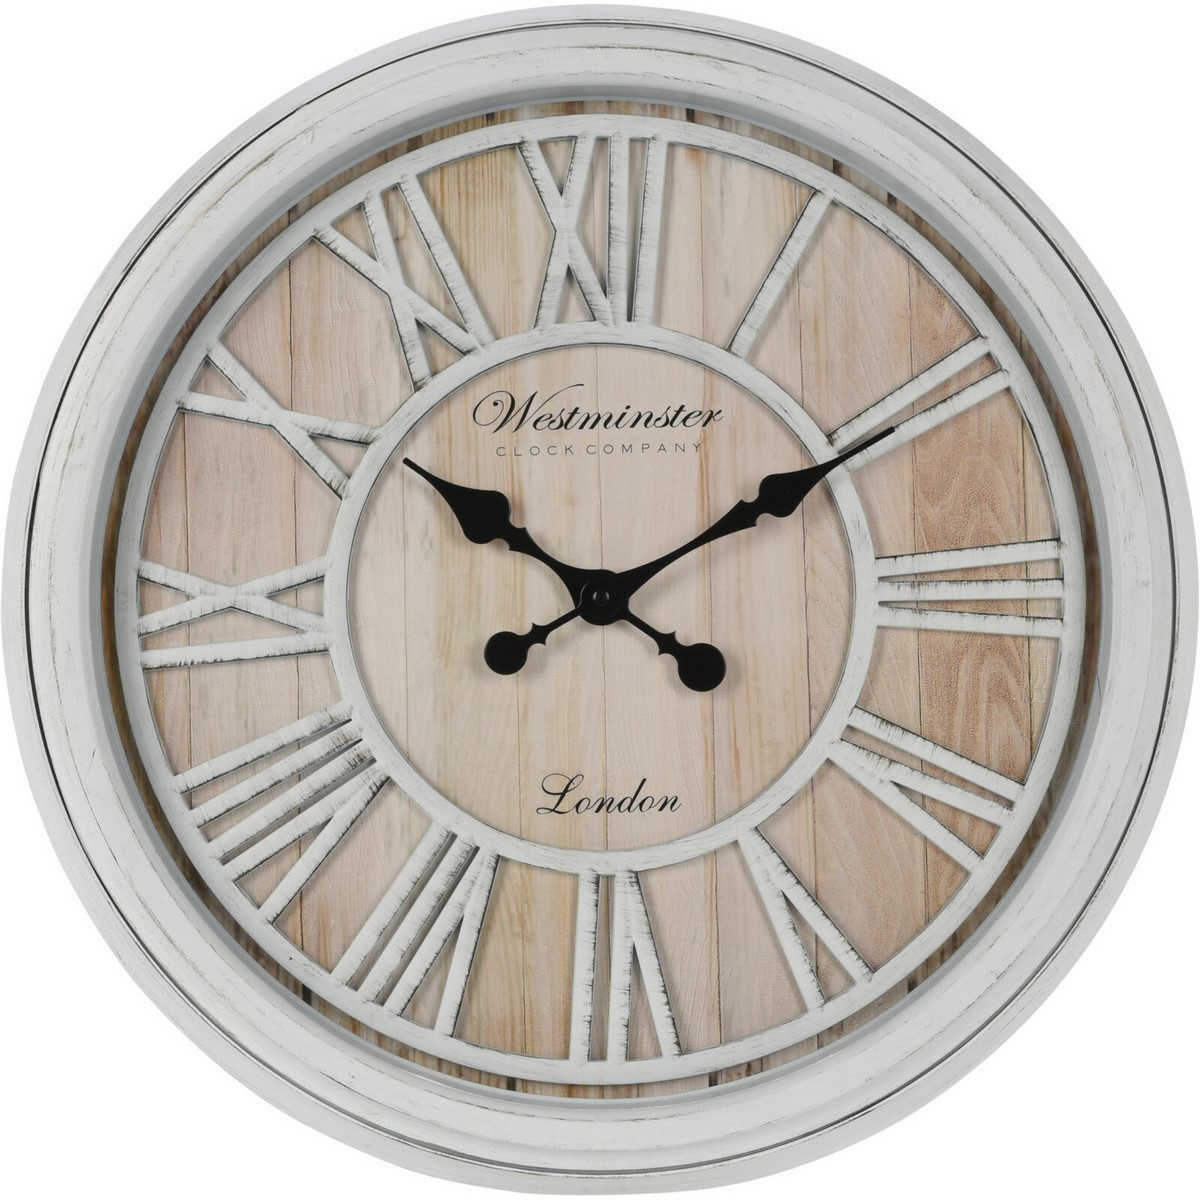 Fotografie Nástěnné hodiny Westminster, 50 x 5,5 cm, římské číslice, MDF